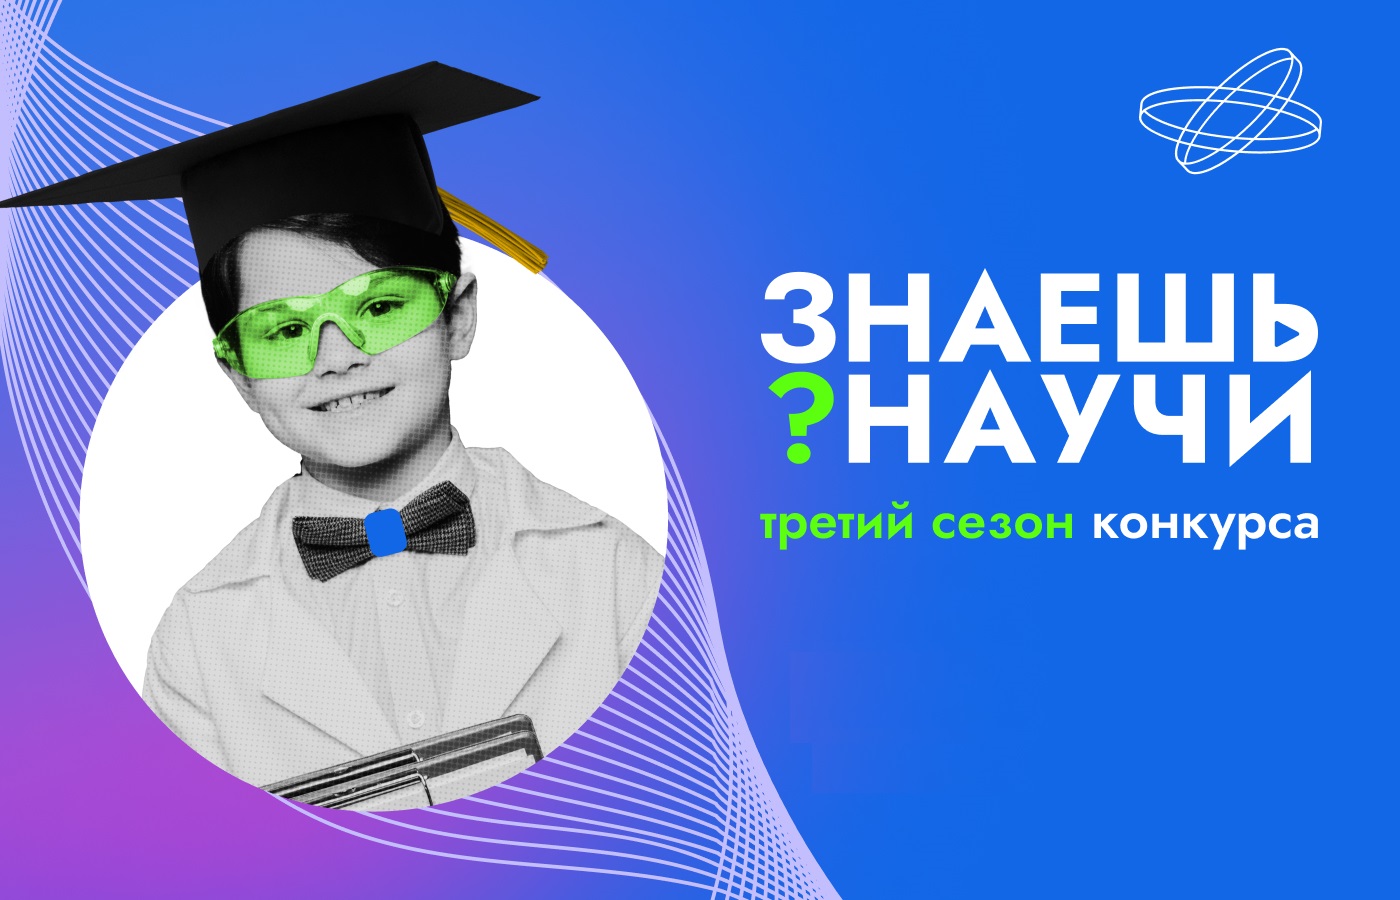 В России стартовал третий сезон конкурса детского научно-популярного видео «Знаешь?Научи!».